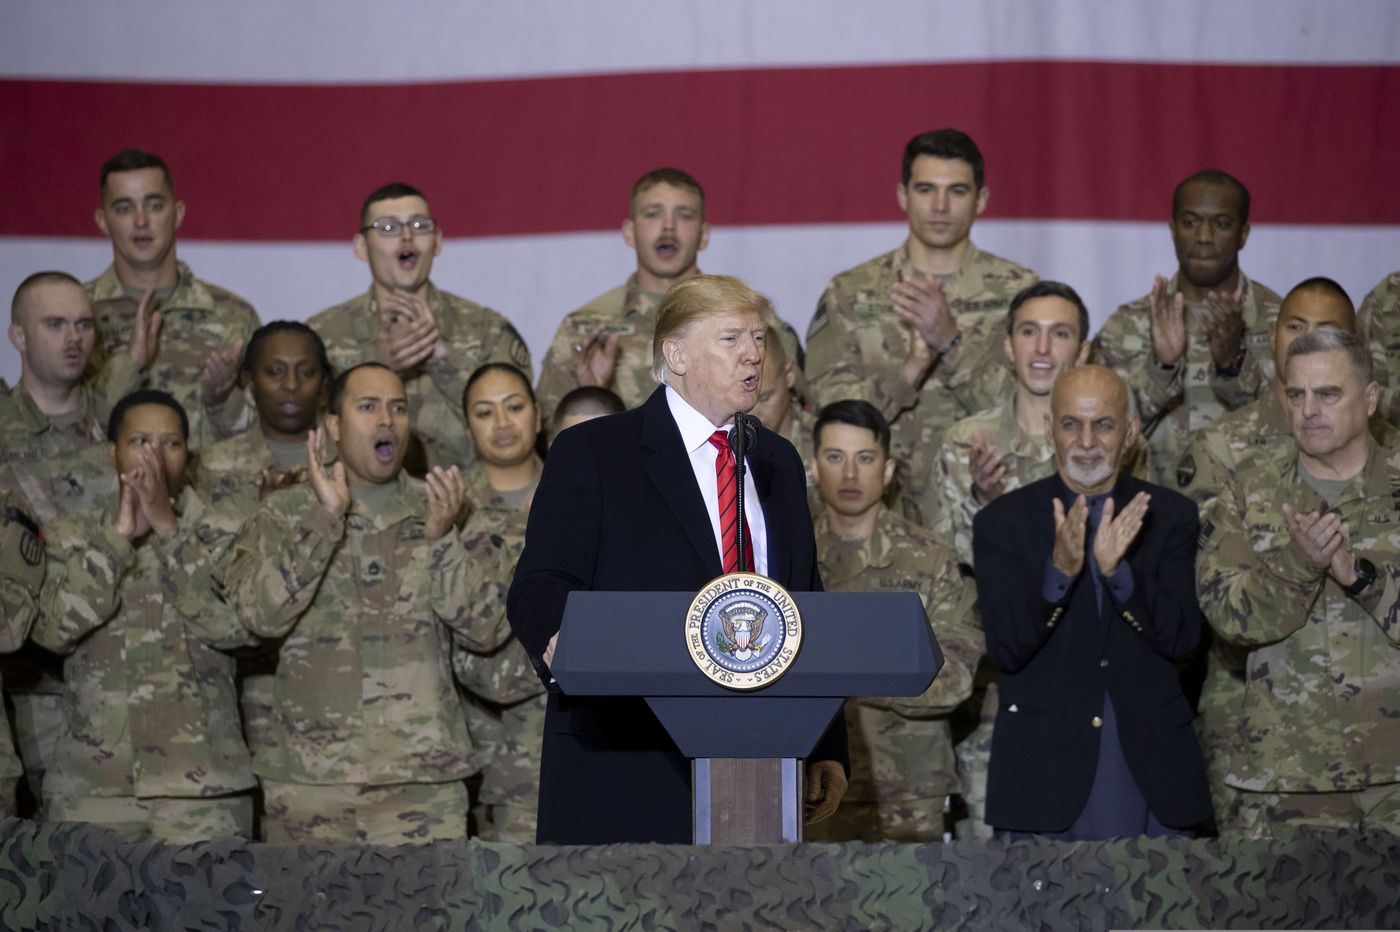 Il disamore di Trump per le forze armate, tra fake news e verità